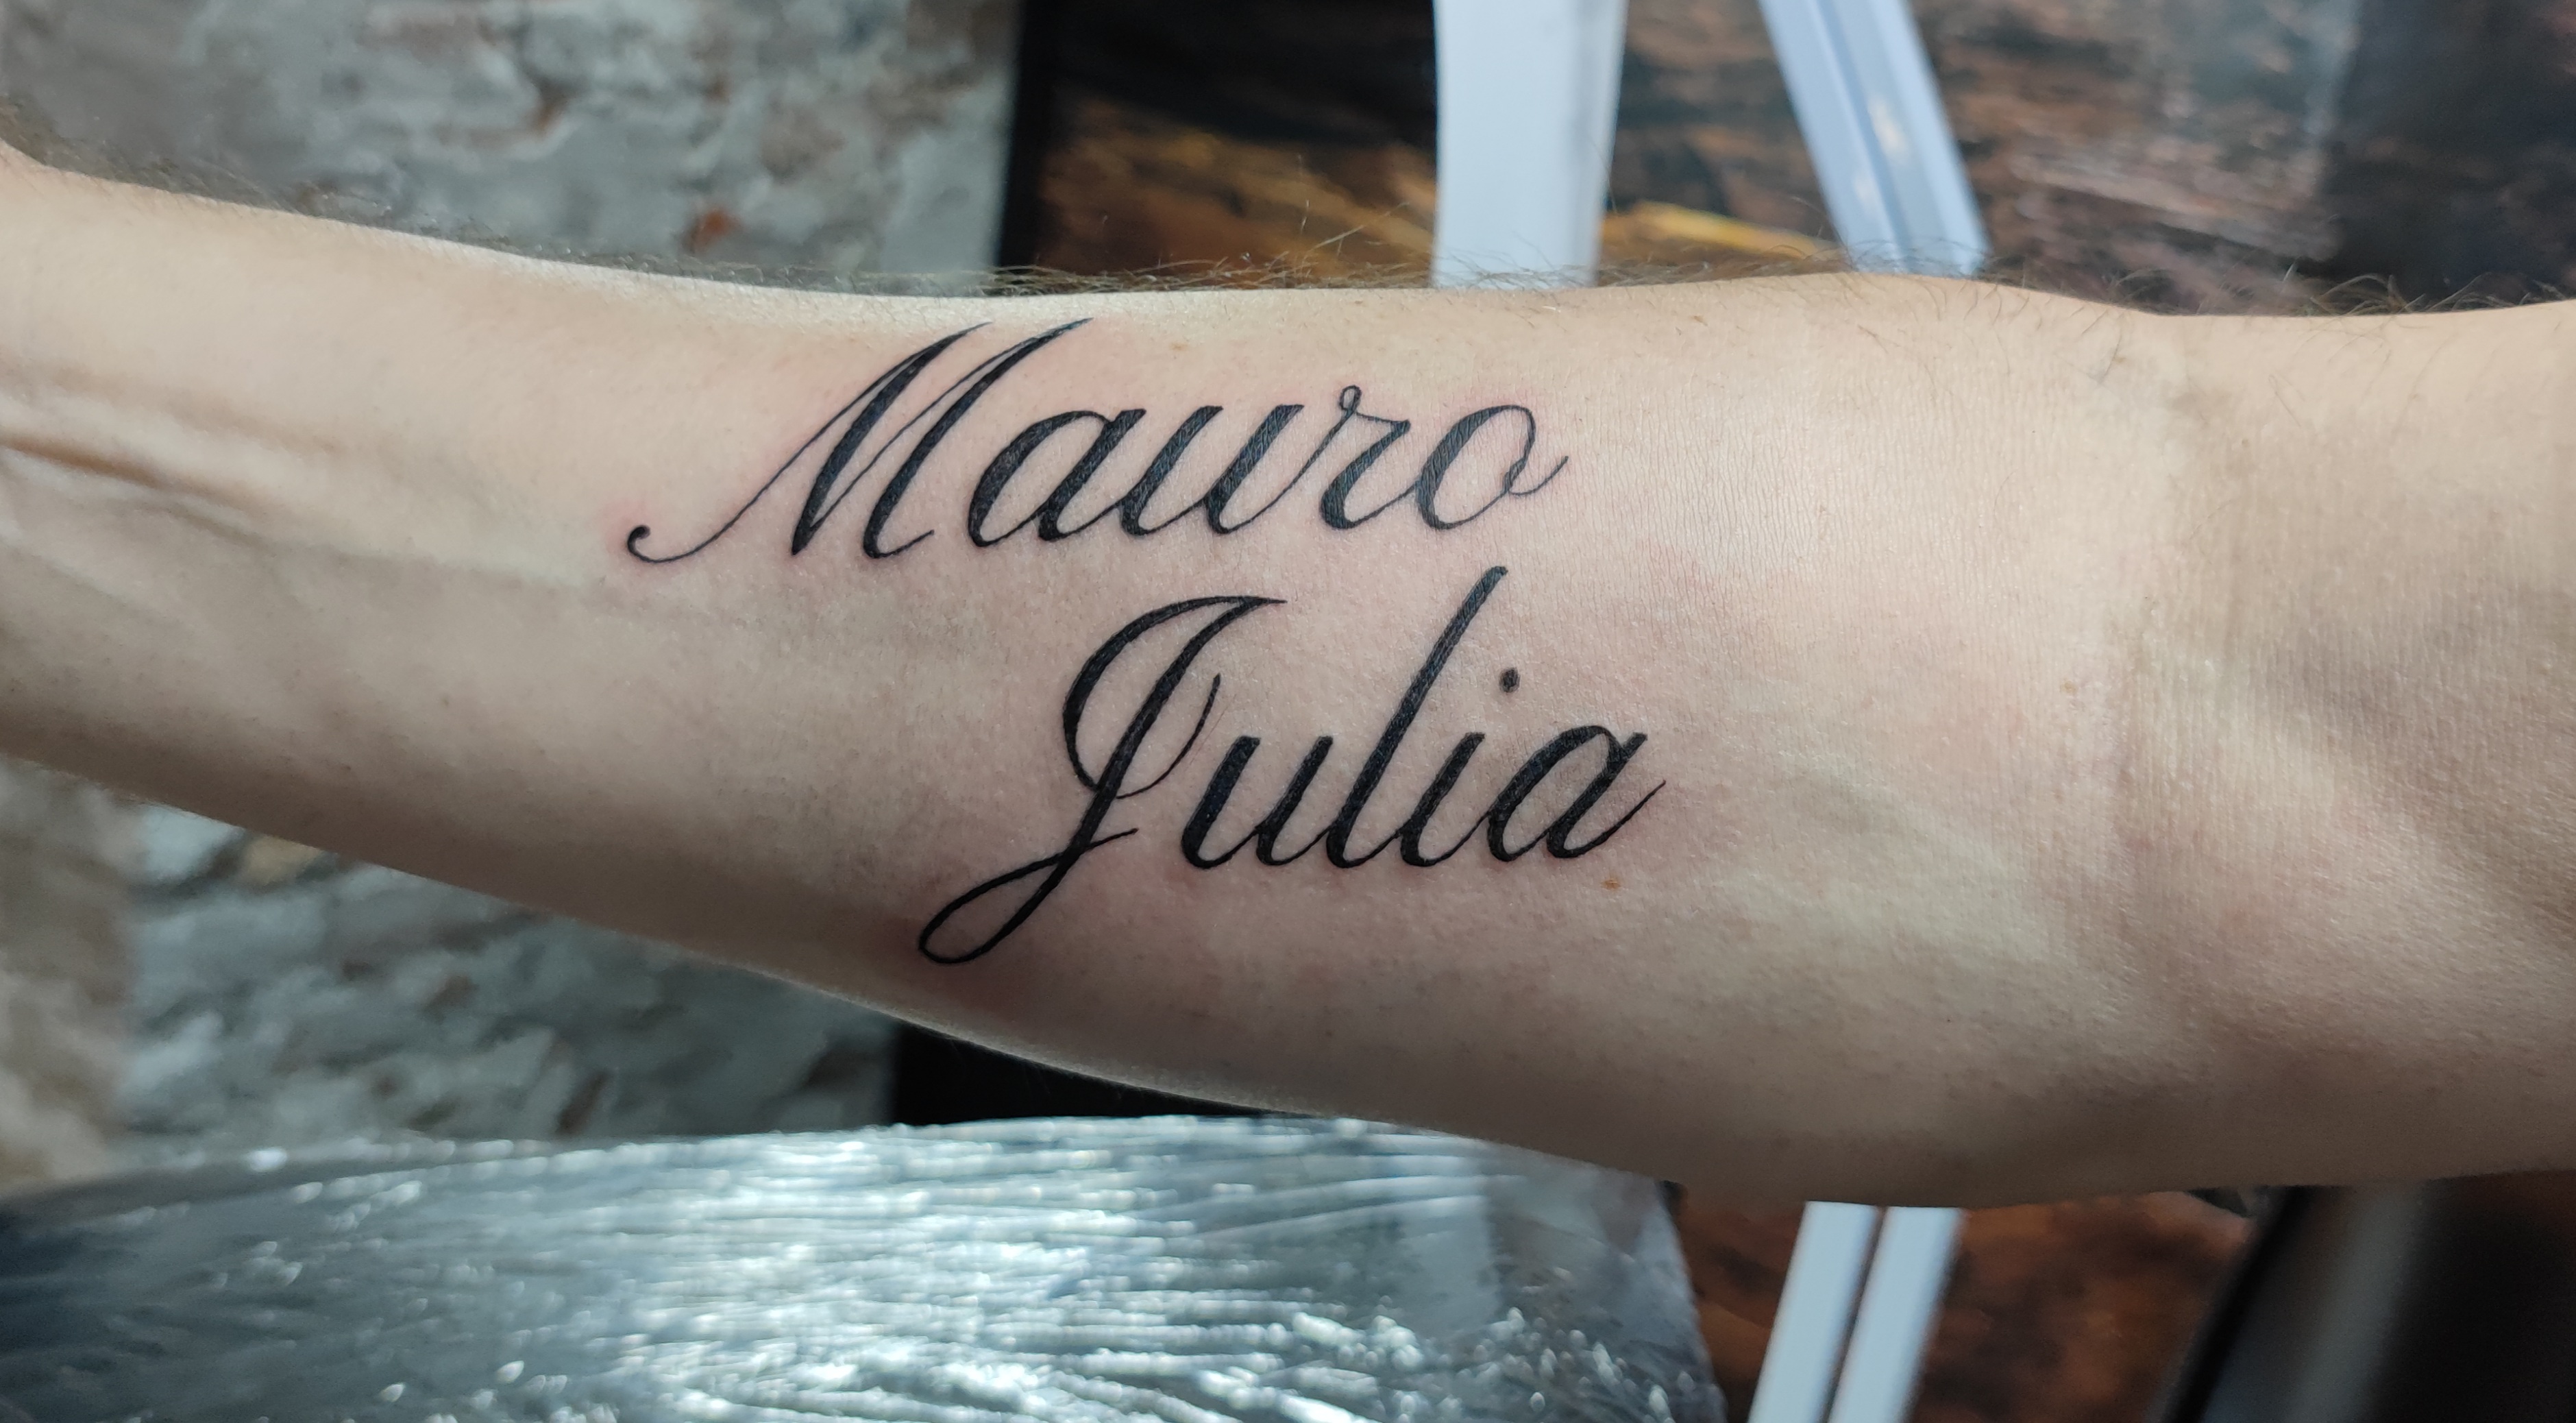 Mauro en Julia